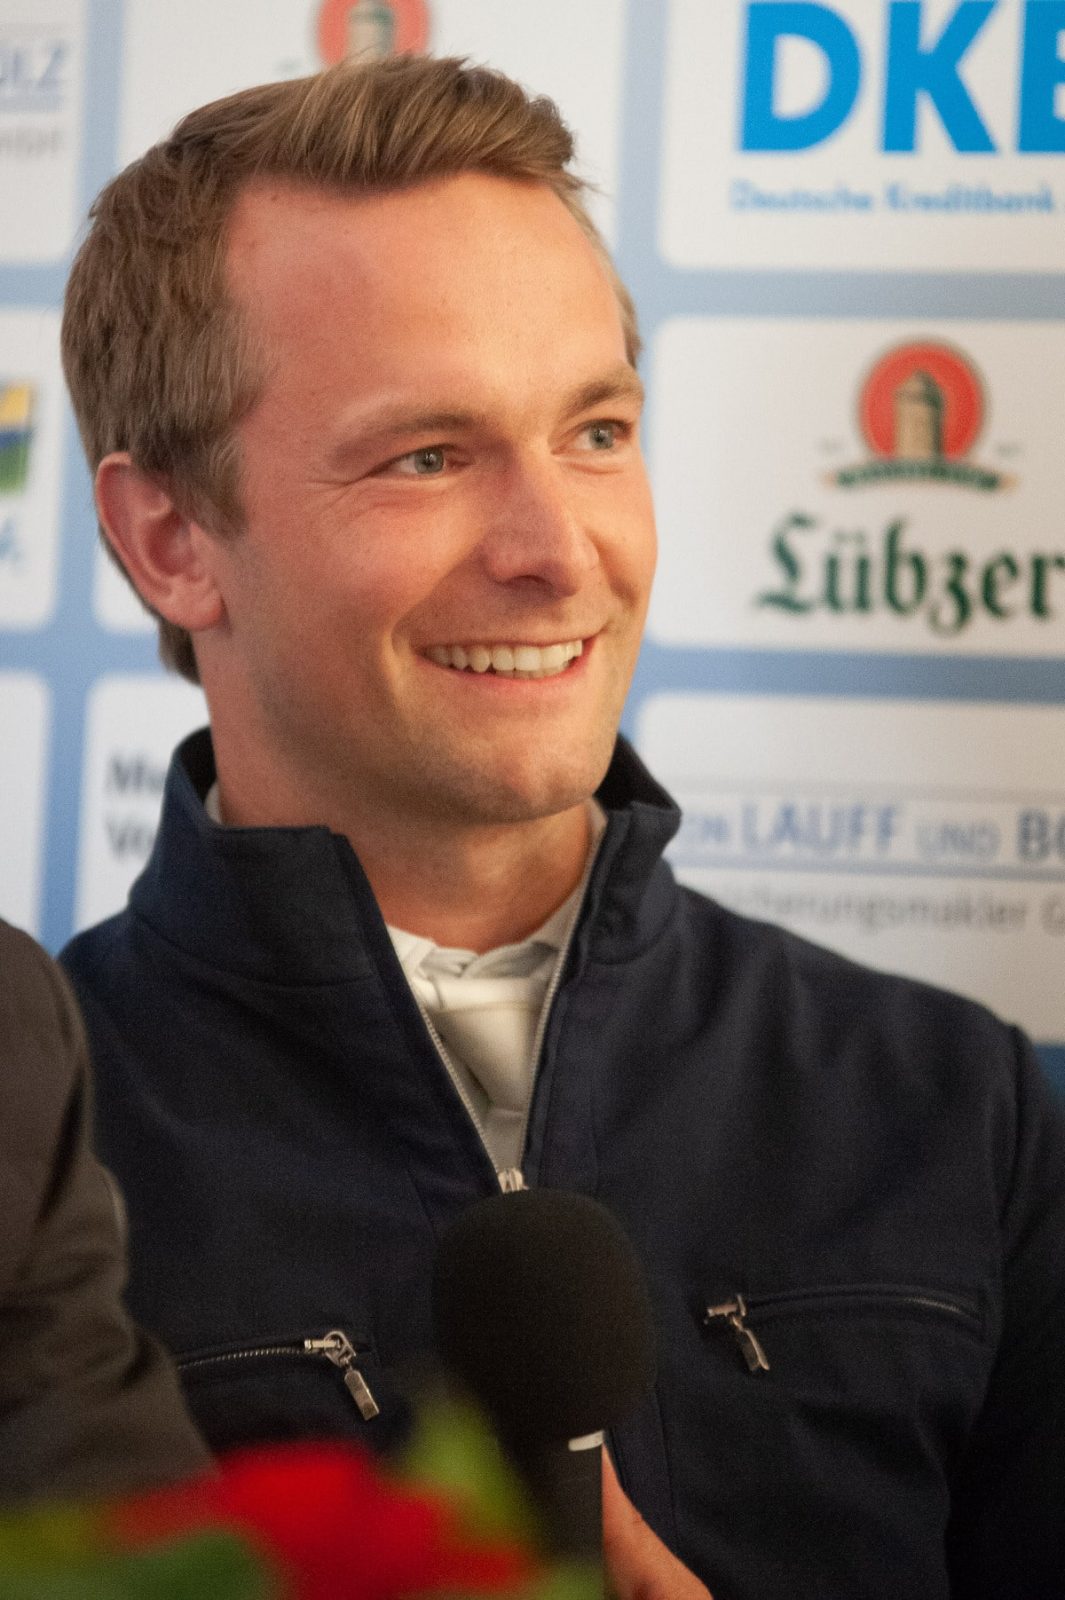 Patrick Stühlmeyer ist der Rider of the Year 2022